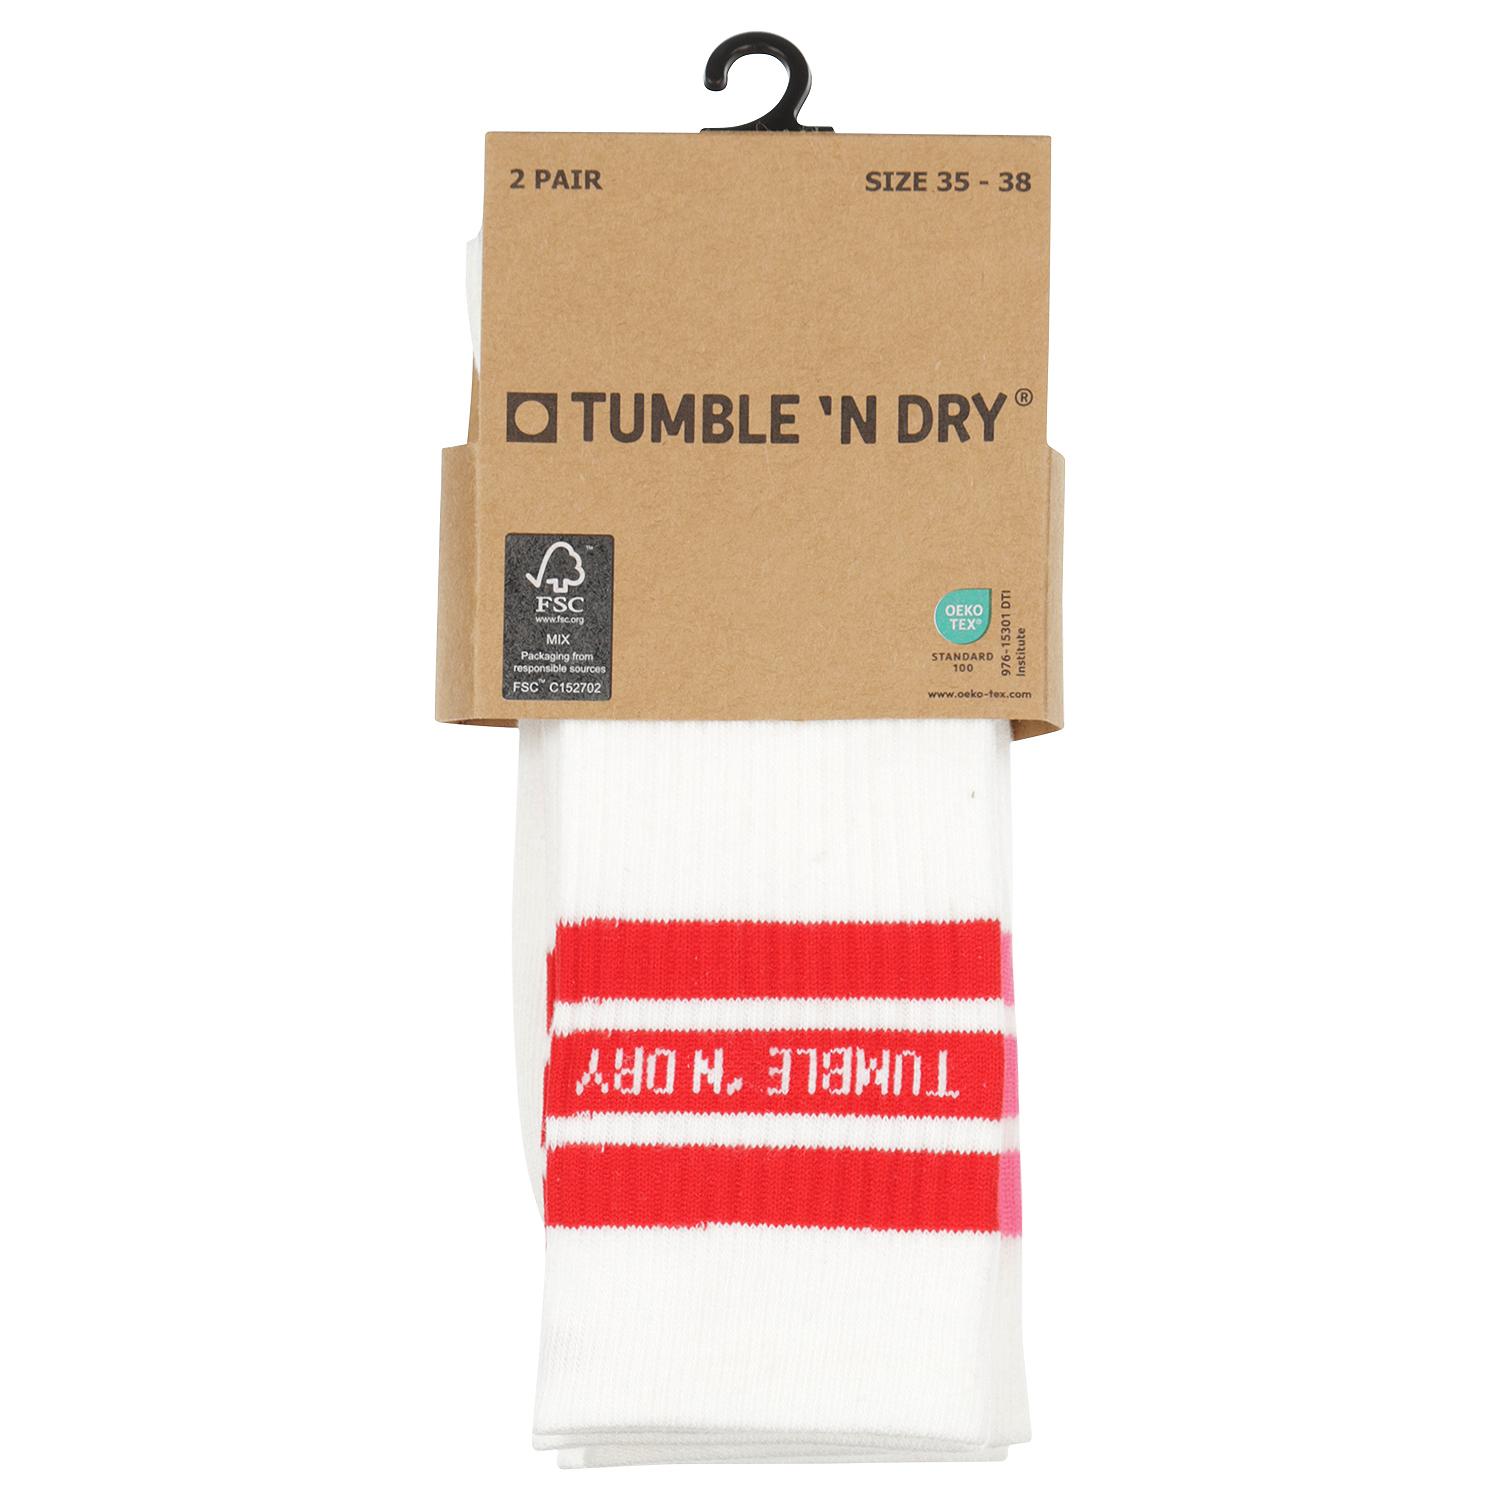 Tumble Socks -Tumble 'N Dry